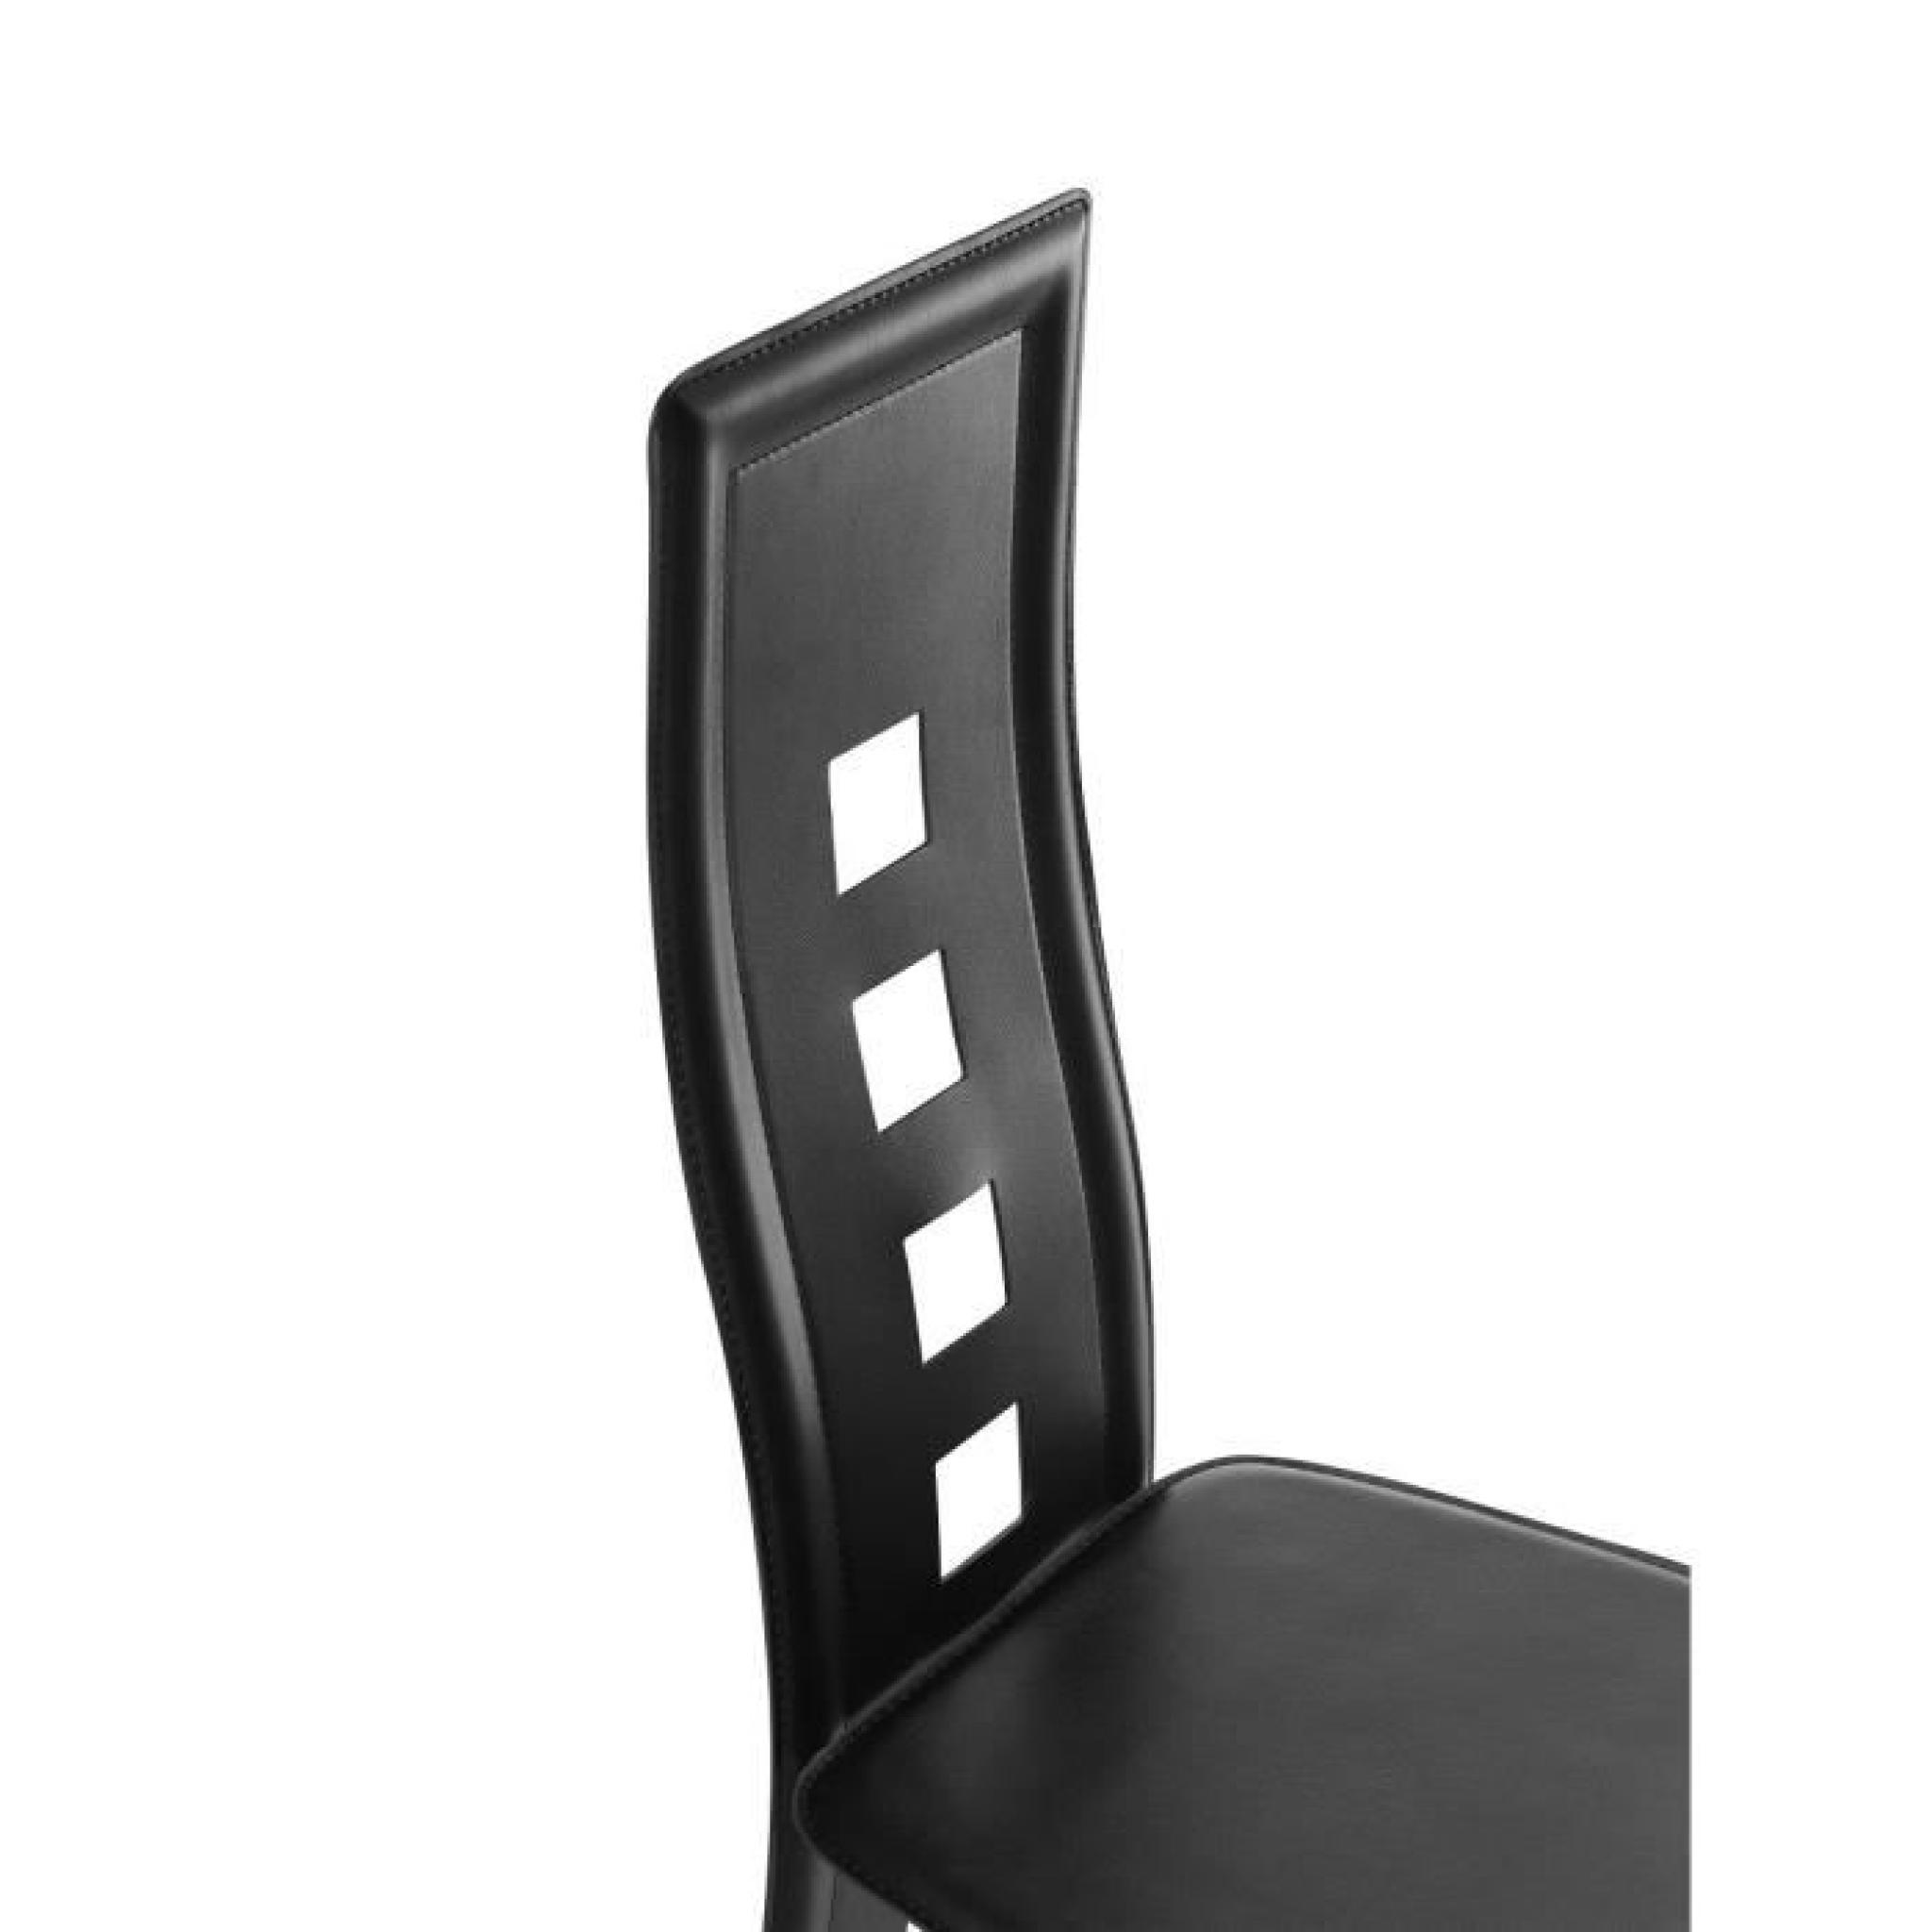 EIFFEL lot de 2 chaises de salle à manger noires  simili et aluminium - Design pas cher